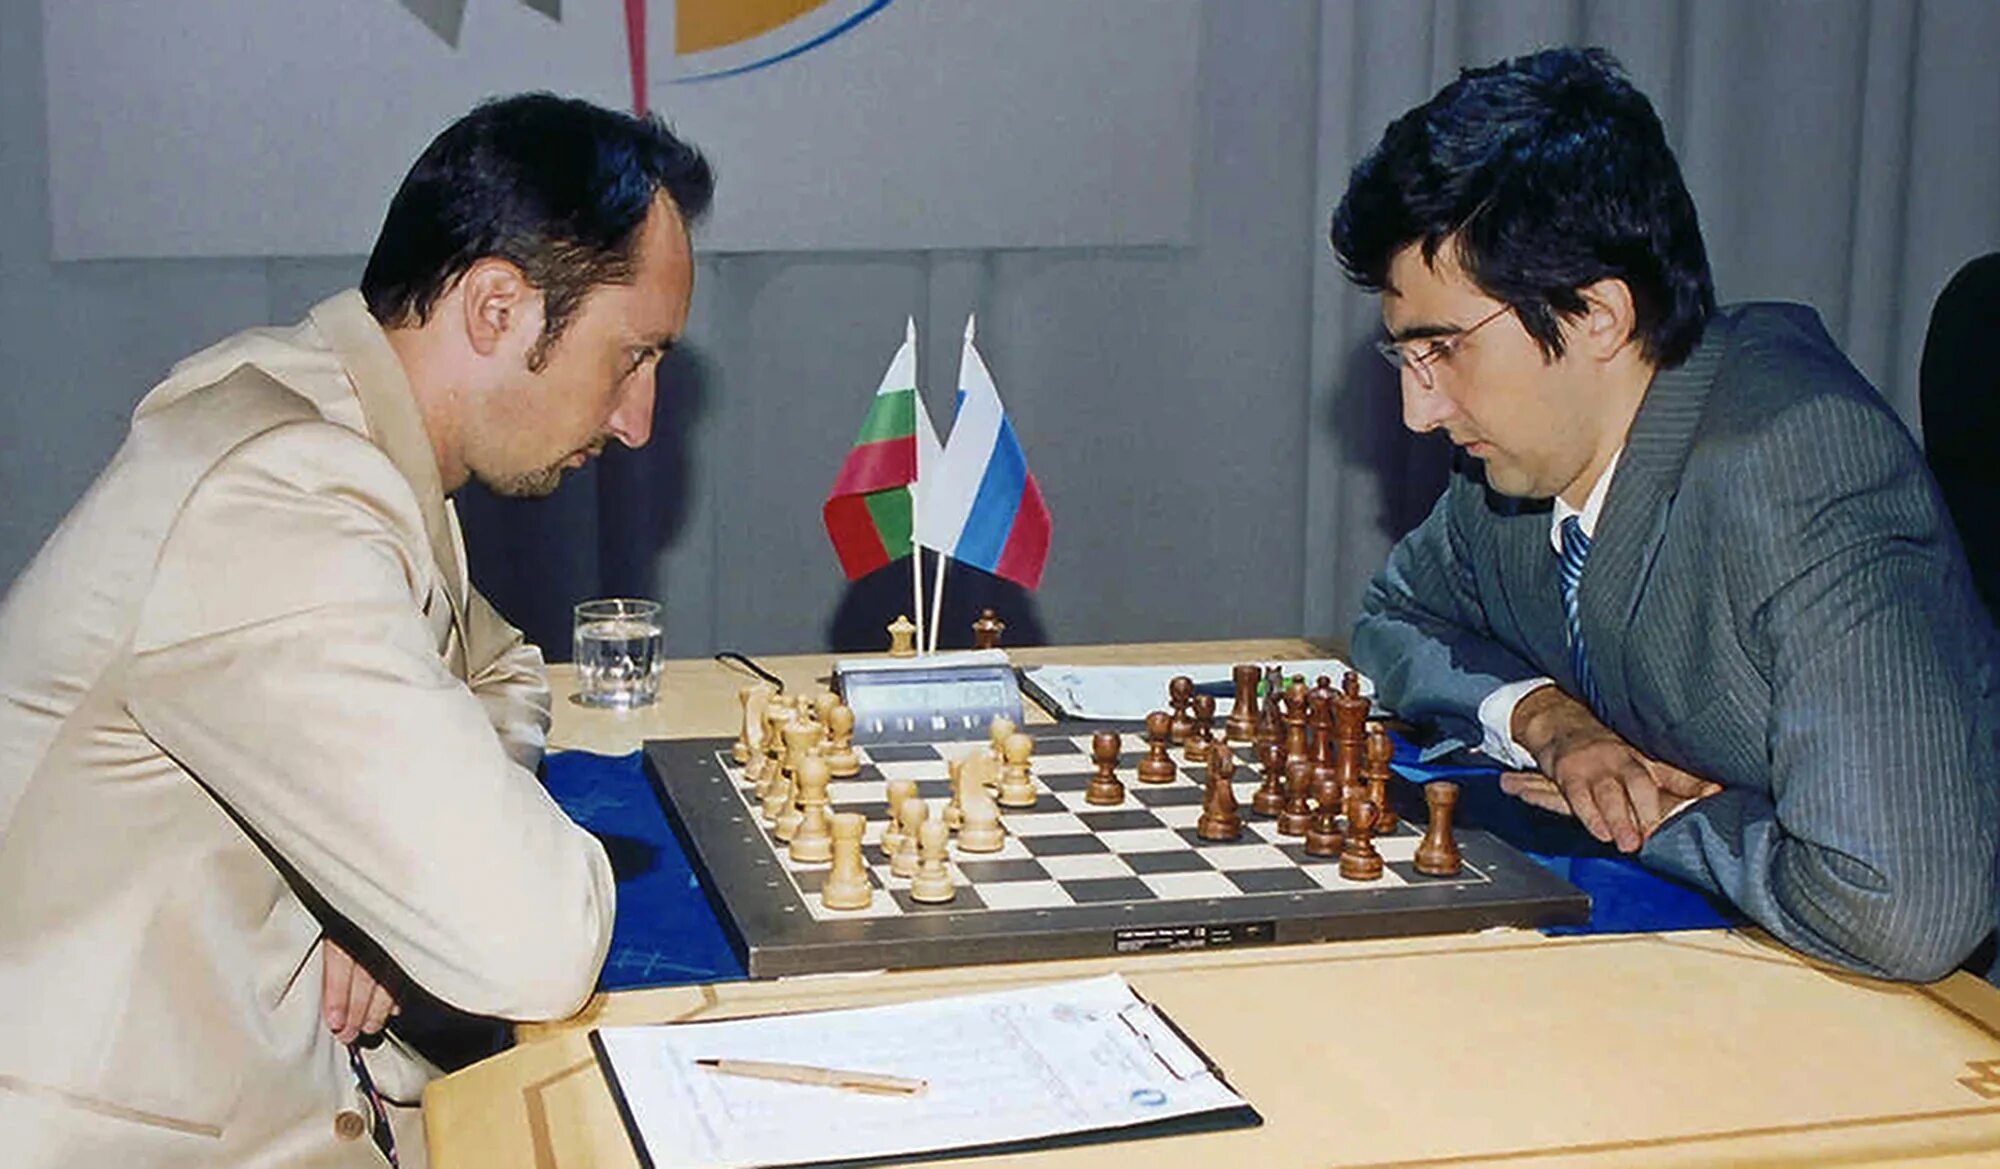 Чемпионы играют в шахматы. Крамник Топалов 2006. Веселин Топалов шахматист.